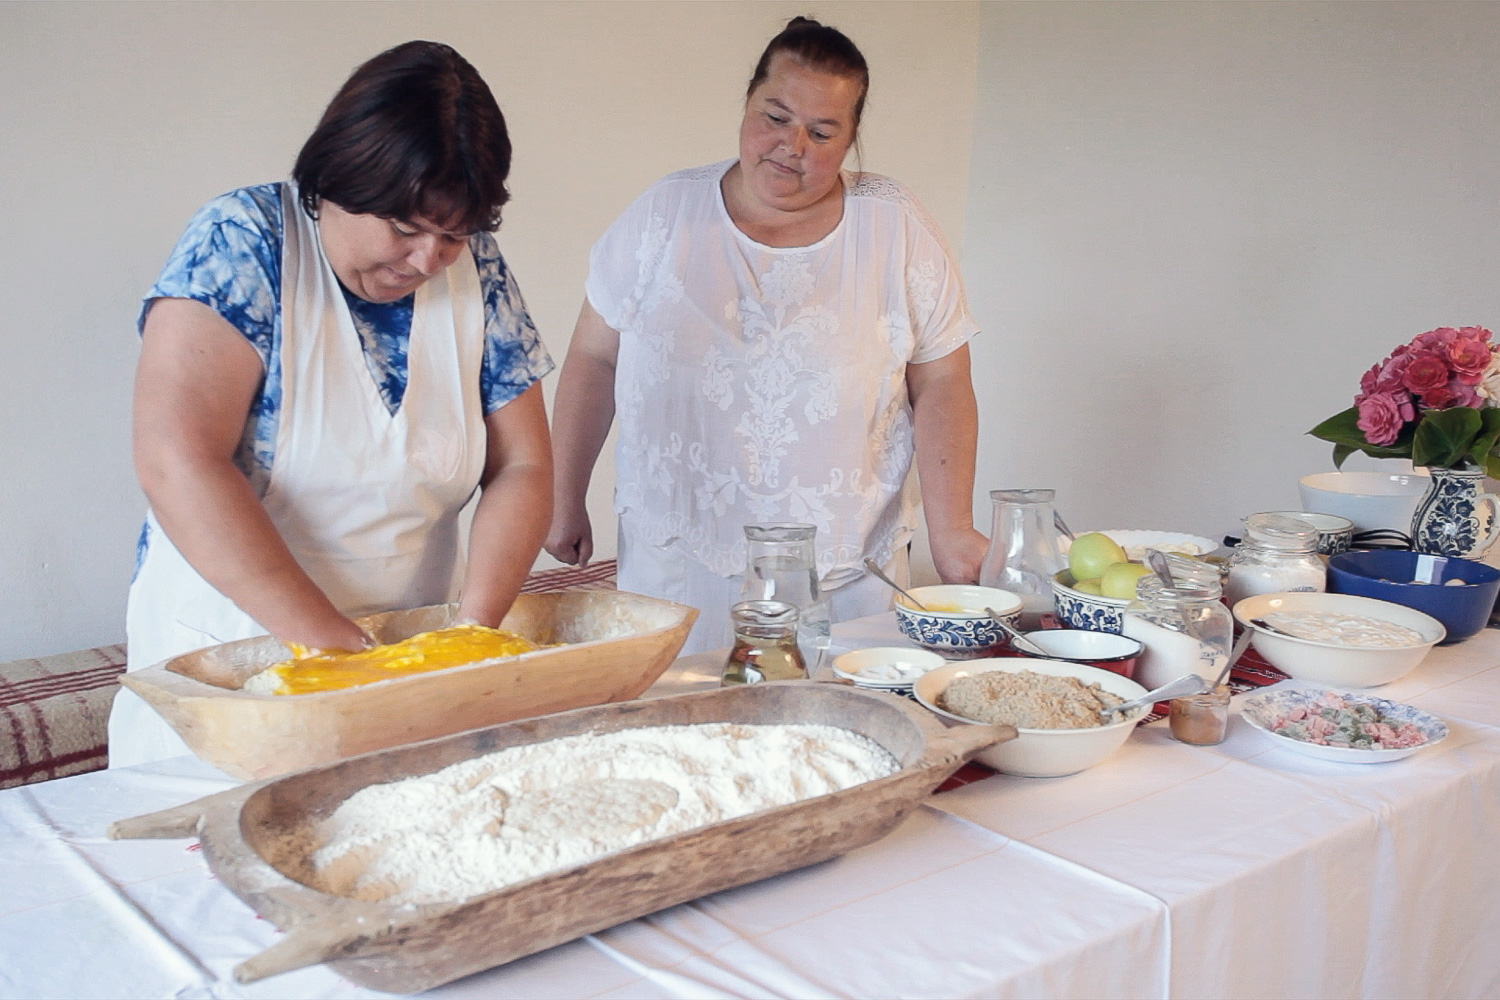 Atelierul de bucătărie tradițională - Mălâncrav 2015